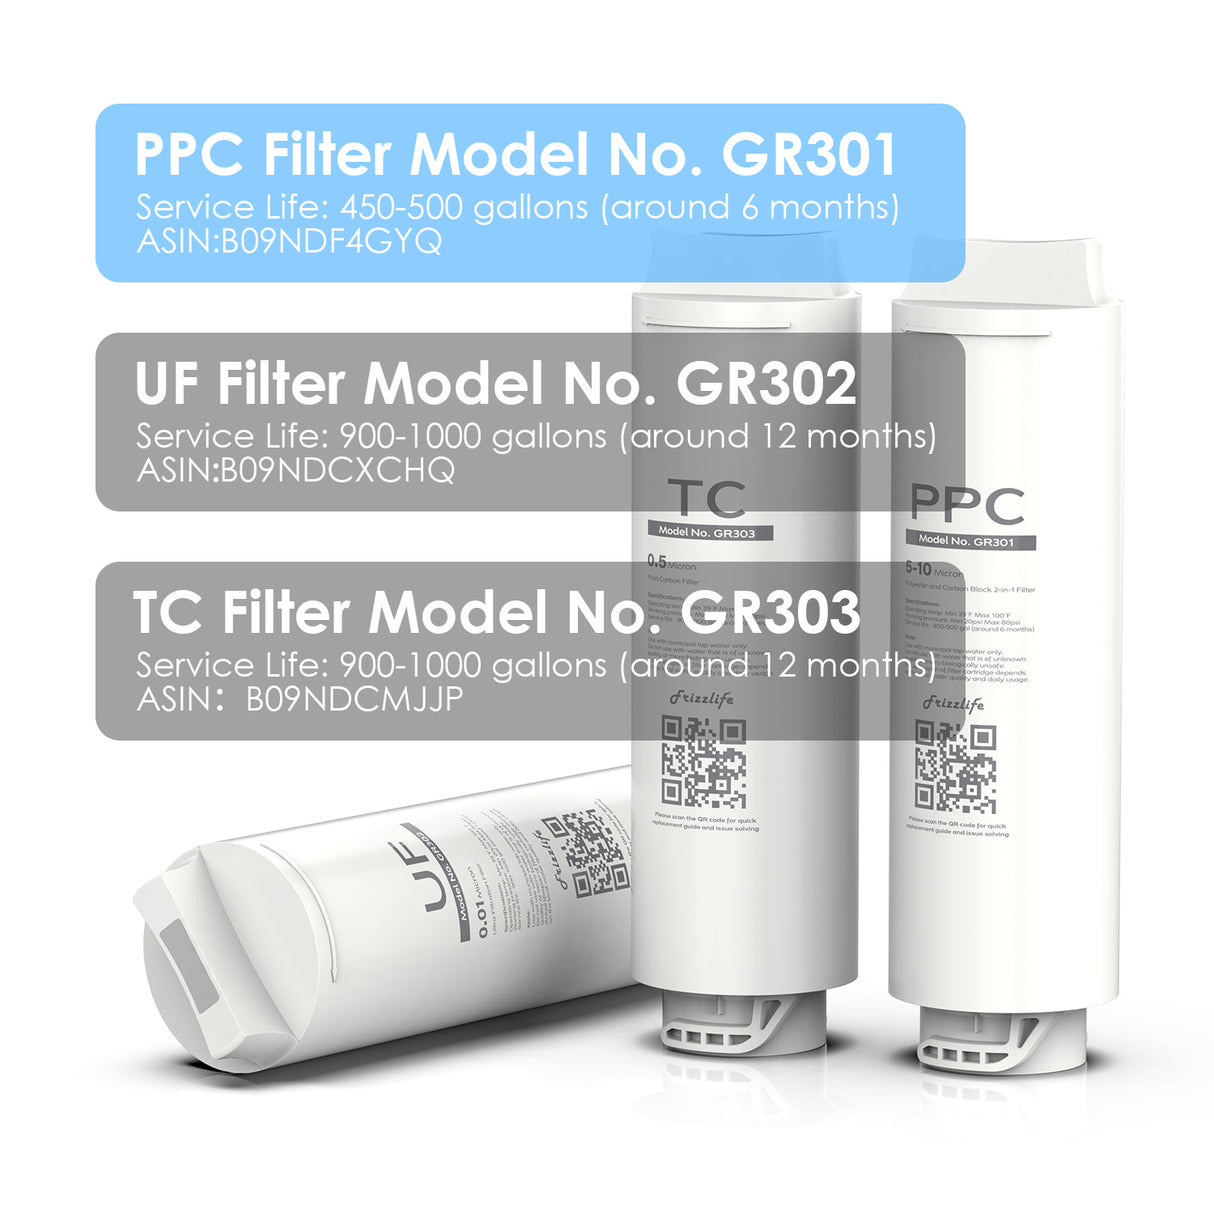 Cartucho de filtro de repuesto Frizzlife GR301 (PPC) para filtro de agua de ultrafiltración GX99